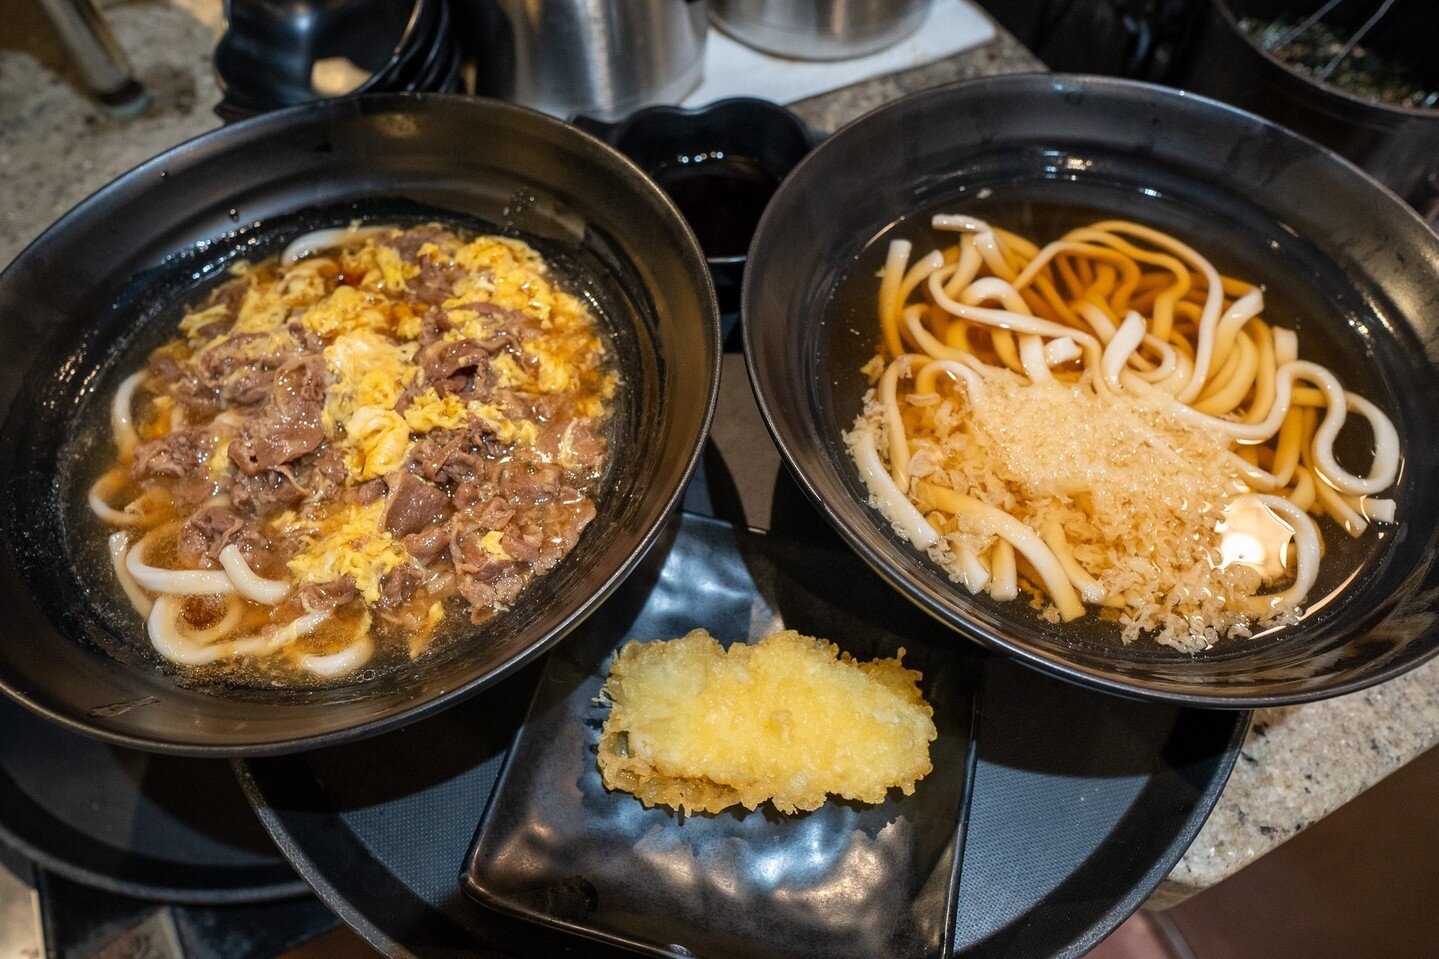 Udon bliss in every bite &ndash; savor the goodness! ITADKAIMASU! #FoodieFindsLA 🍜🥢 

👇 Freshly homemade noodles 
◾️◽️◾️◽️◾️◽️◾️◽️◾️◽️
🍜 ᴍᴀʀᴜɢᴀᴍᴇ ᴍᴏɴᴢᴏ ʟᴀ
⏰ ᴍᴏɴ - ᴛʜᴜʀꜱ : 11:30 ᴀᴍ - 9:00 ᴘᴍ 
⏰ ꜰʀɪ - ꜱᴜɴ: 11:30 ᴀᴍ - 10:00 ᴘᴍ
📍 329 ᴇᴀꜱᴛ 1ꜱᴛ ꜱᴛ. ʟɪ